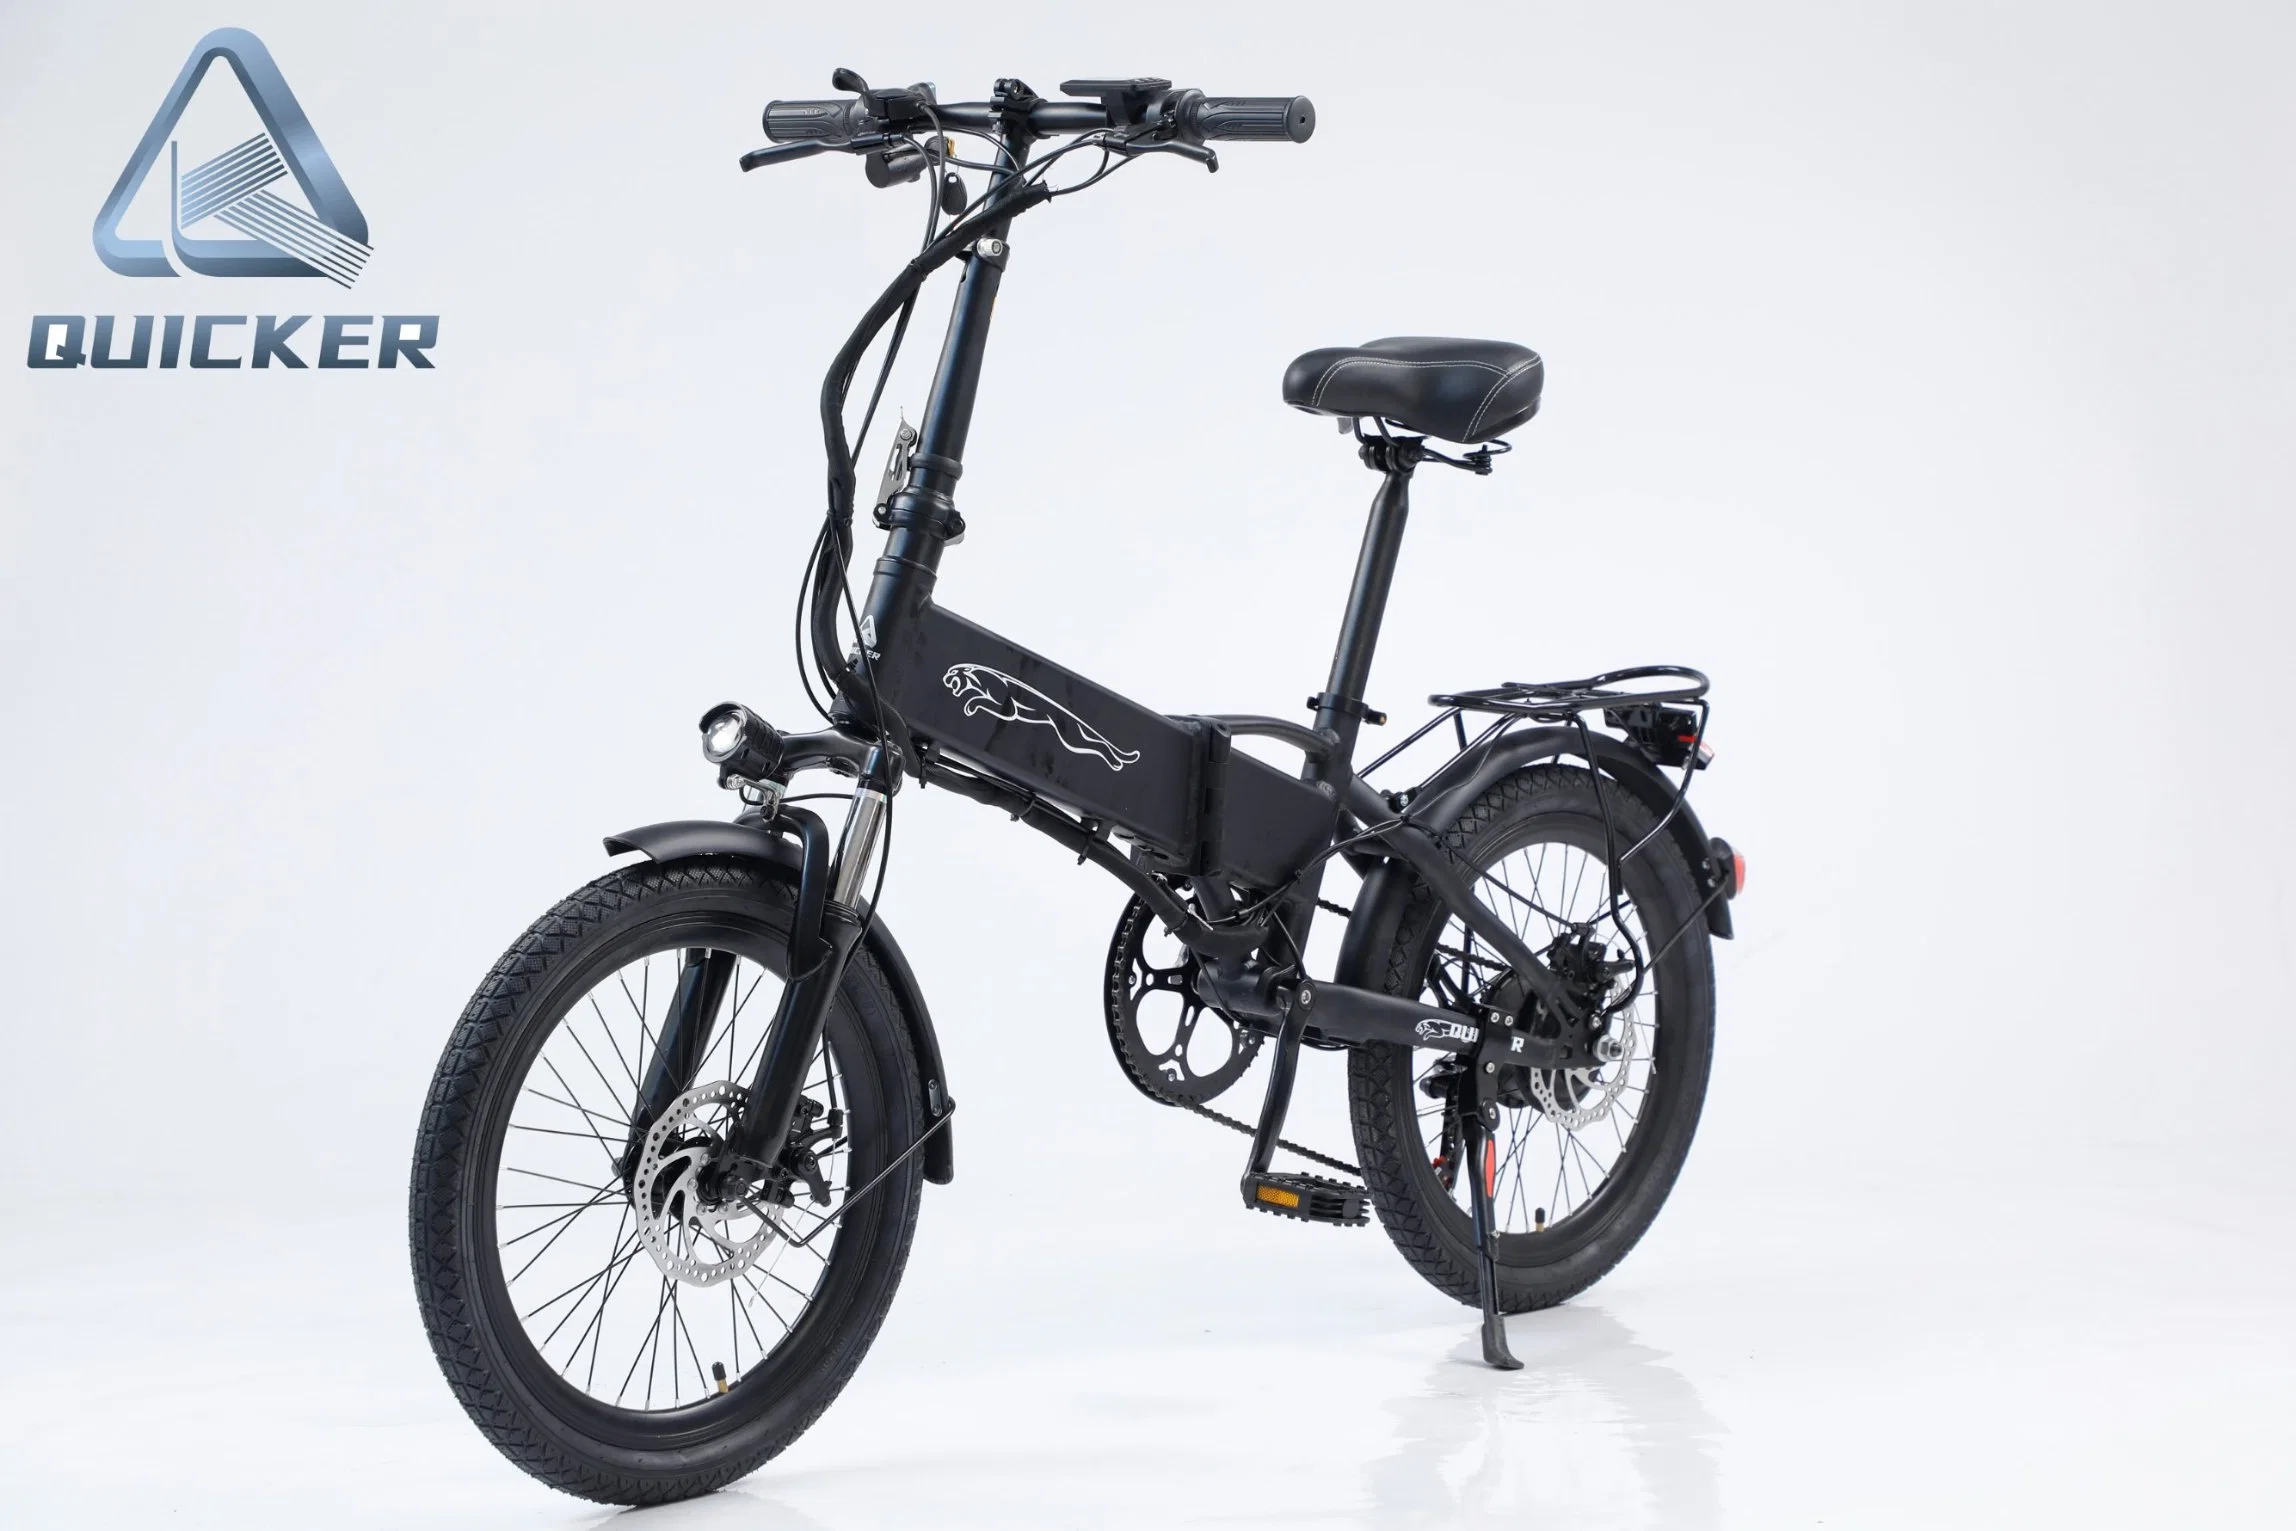 Venda superior 350W 500 watts Ebike Vintage com CEE/Certificado CE de estilo retro bicicleta eléctrica 36V/48V Bateria de lítio 26" pneu de gordura